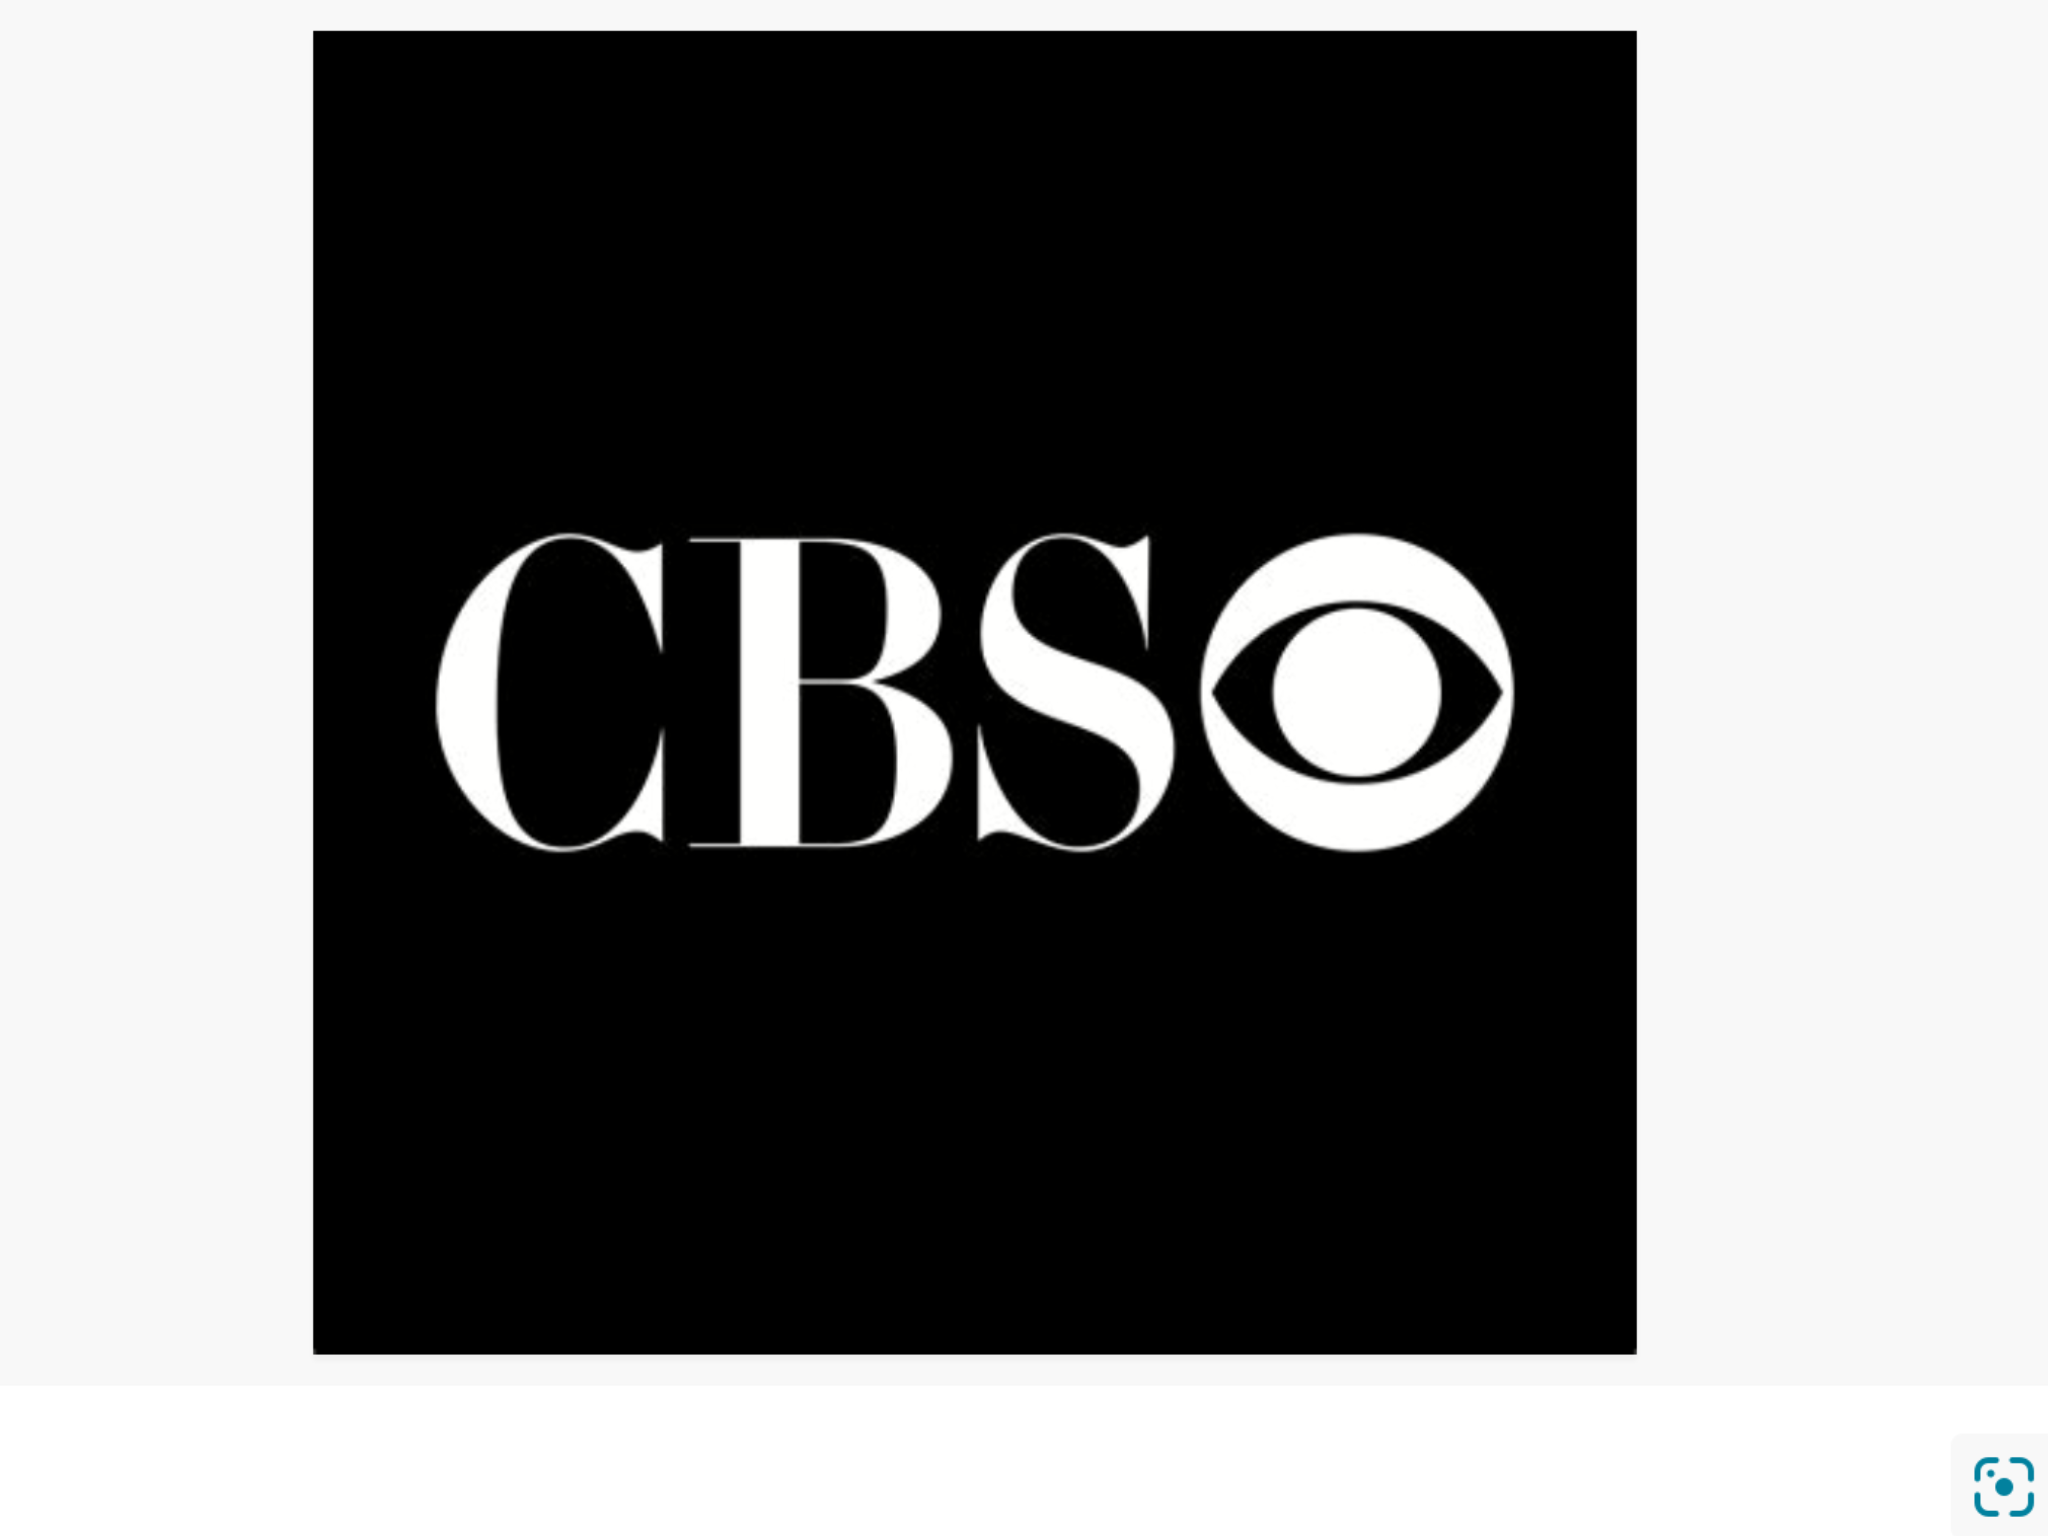 Boycott CBS switch to PBS